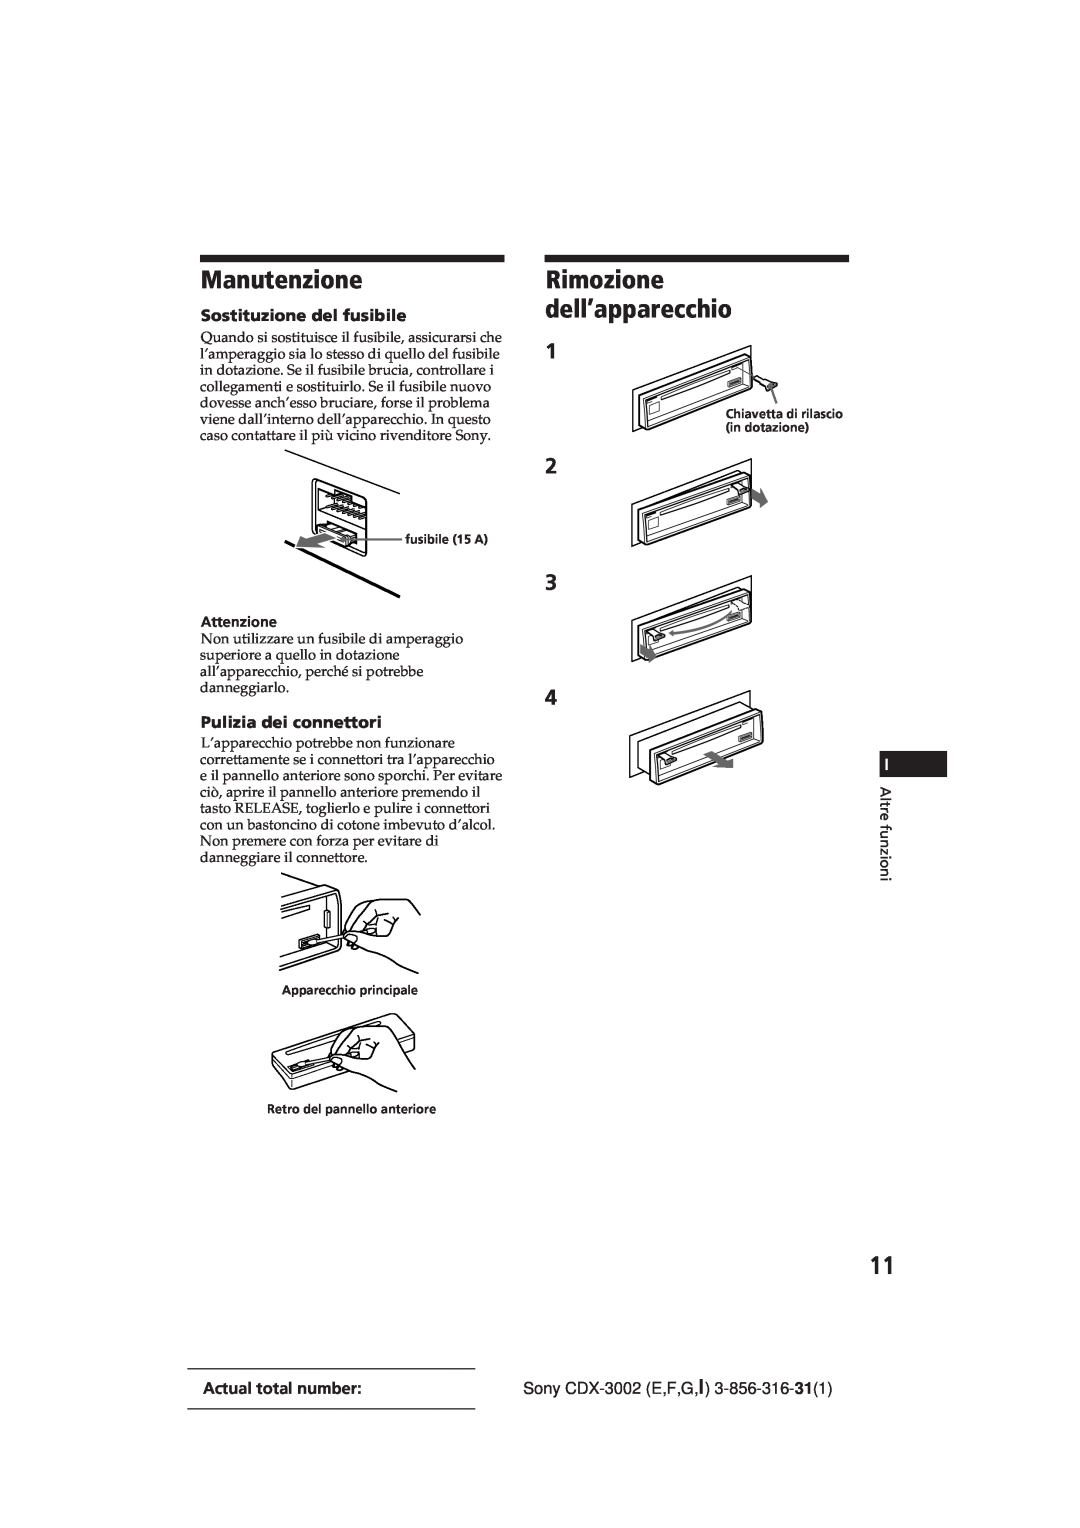 Sony CDX-3002 manual Manutenzione, Rimozione dell’apparecchio, Sostituzione del fusibile, Pulizia dei connettori 